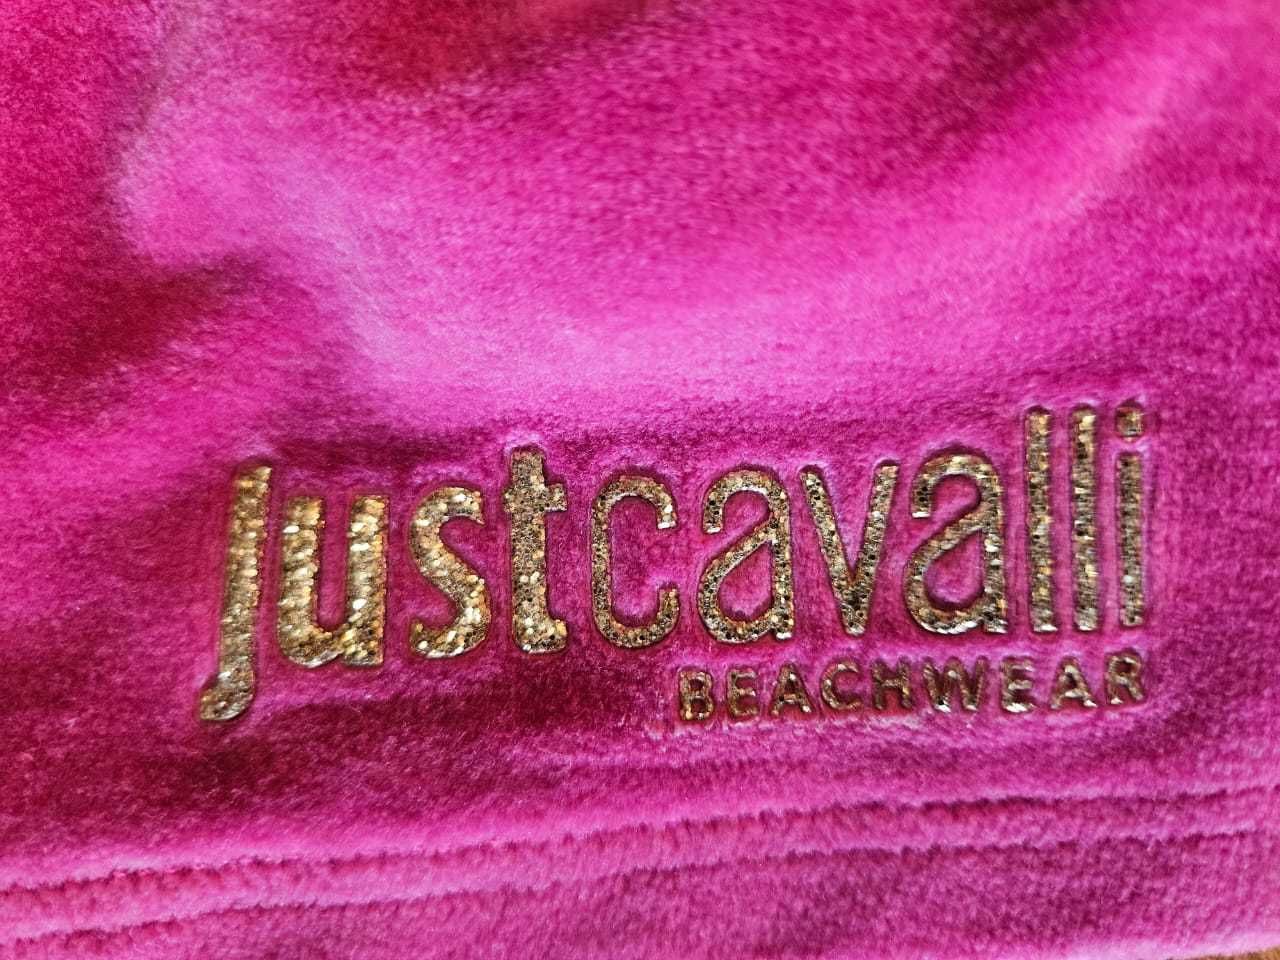 шорты S Just Cavalli  , U.S. Polo Assn оригиналы